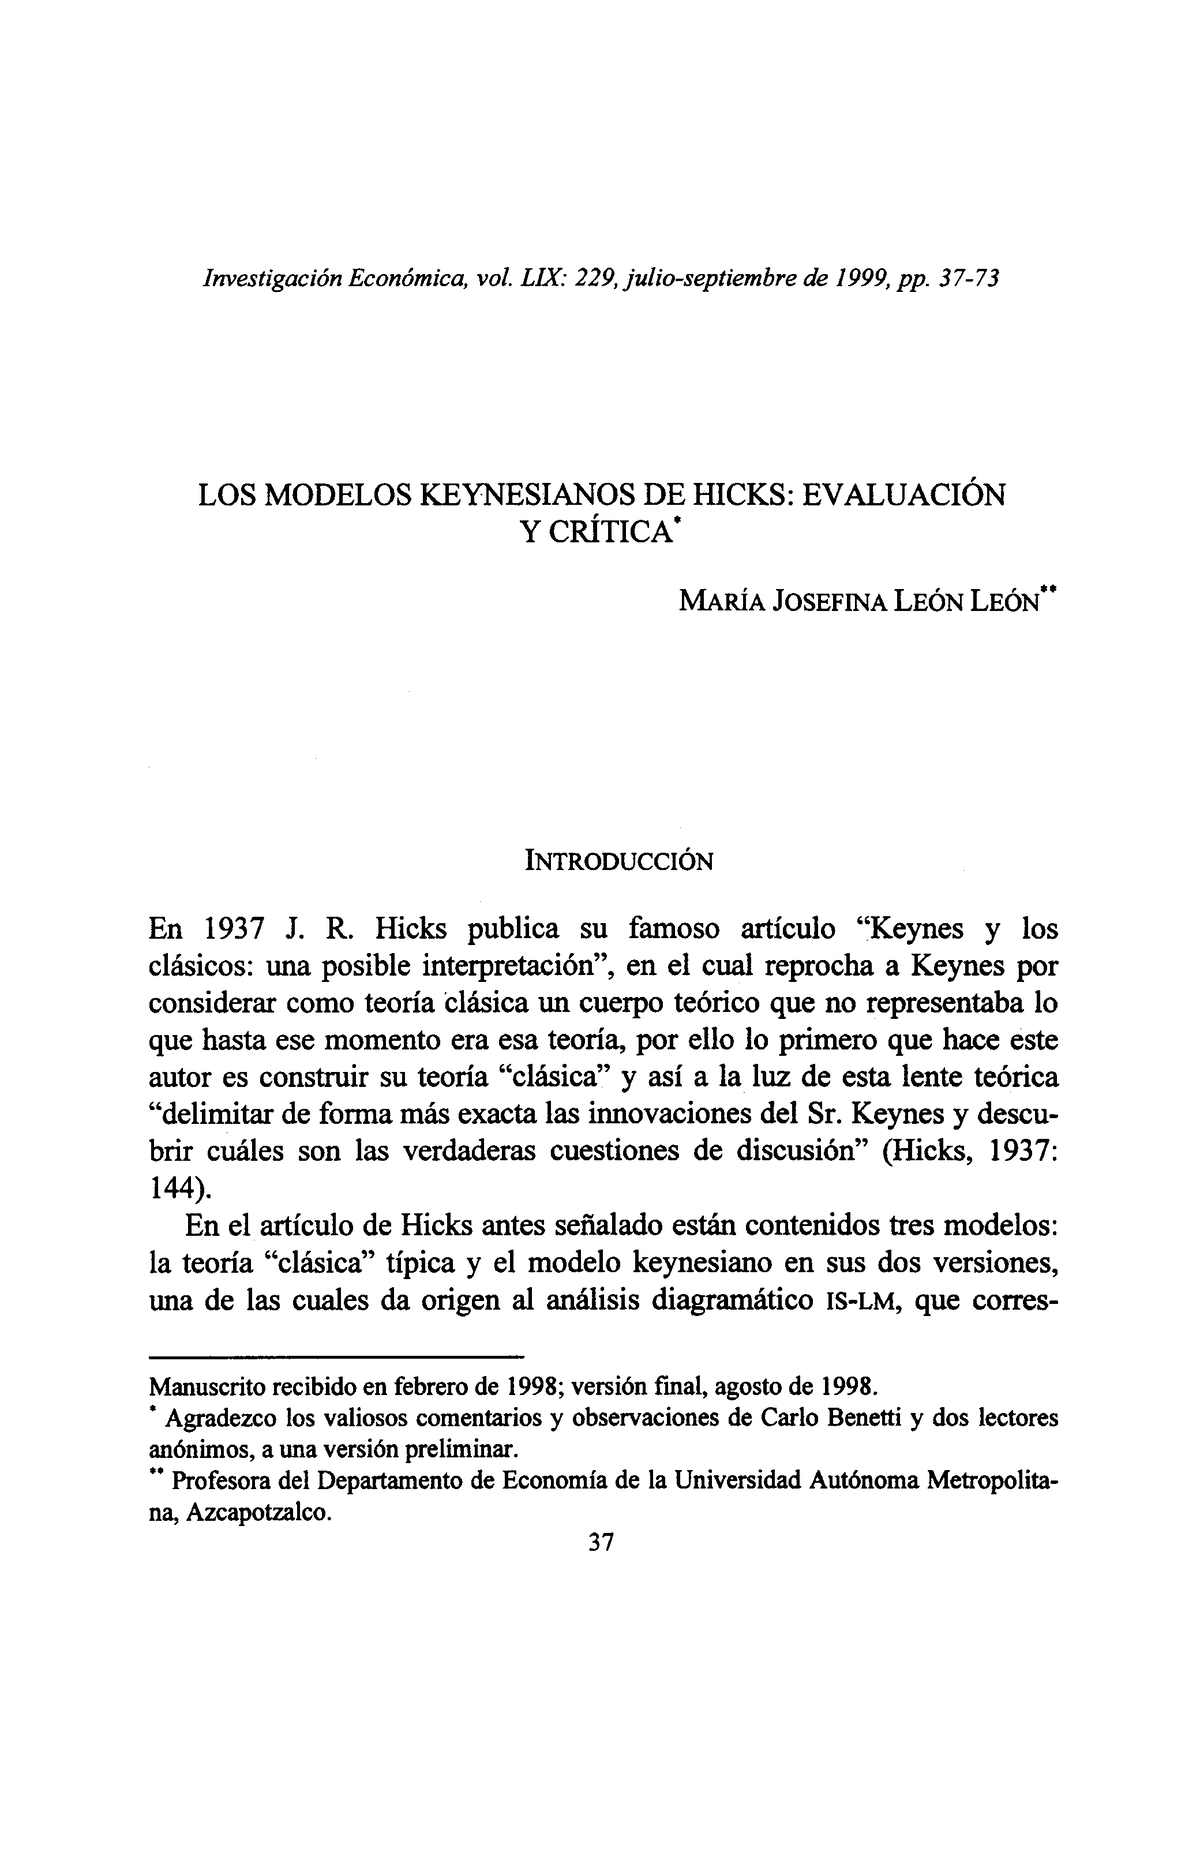 Los modelos keynesianos de Hicks-Evaluación y crítica - Investigación  Económica, vol. LIX: 229, - Studocu